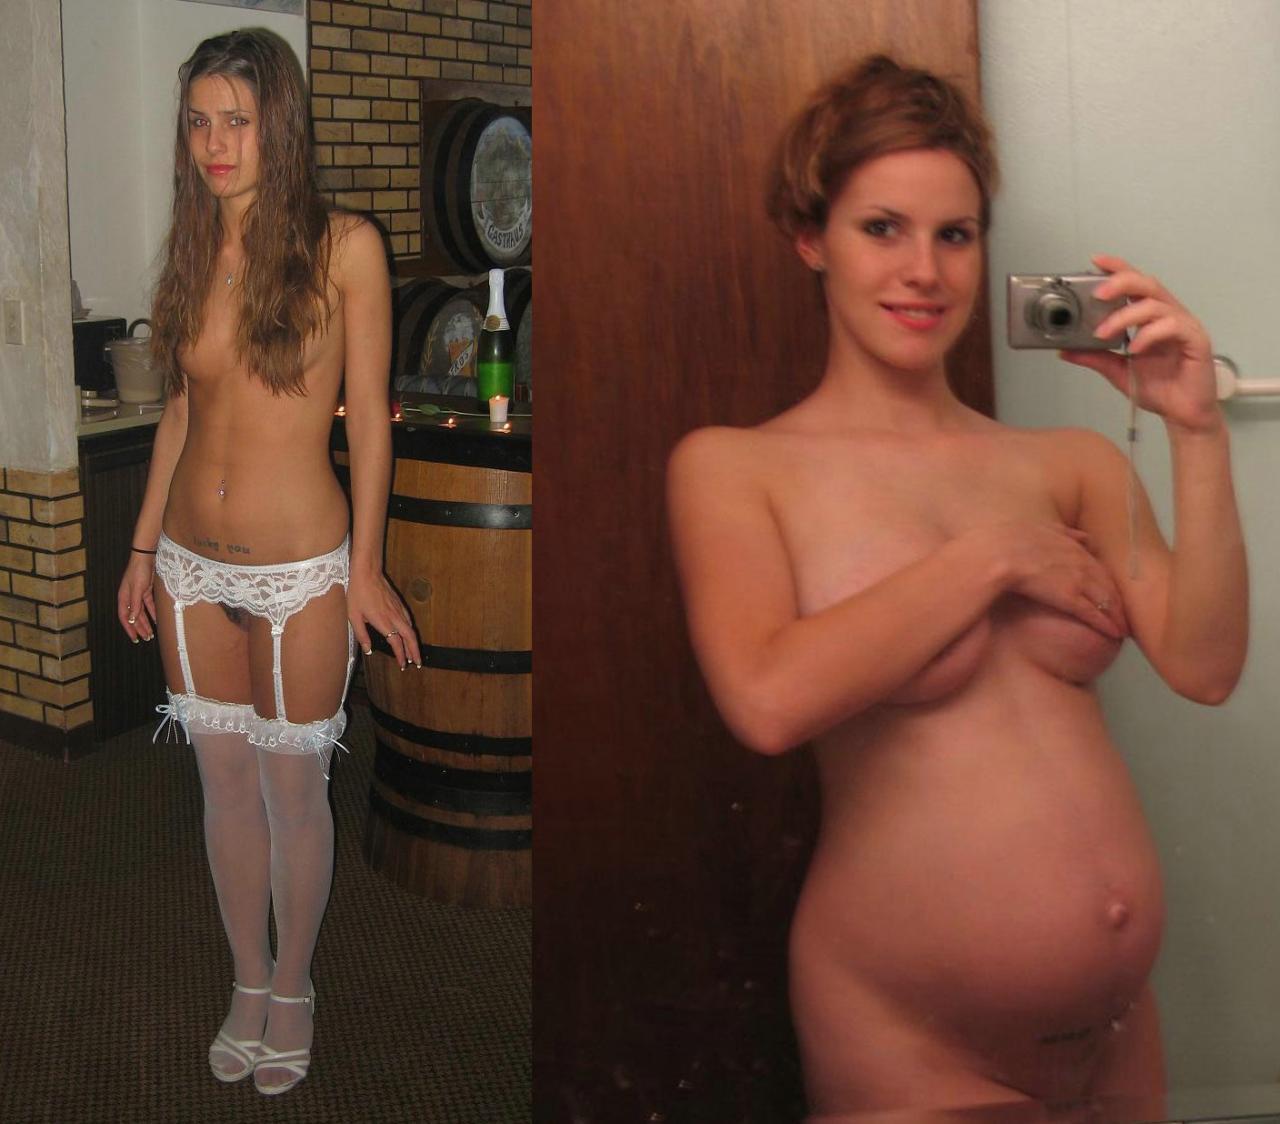 Nude pregnant women photo progression